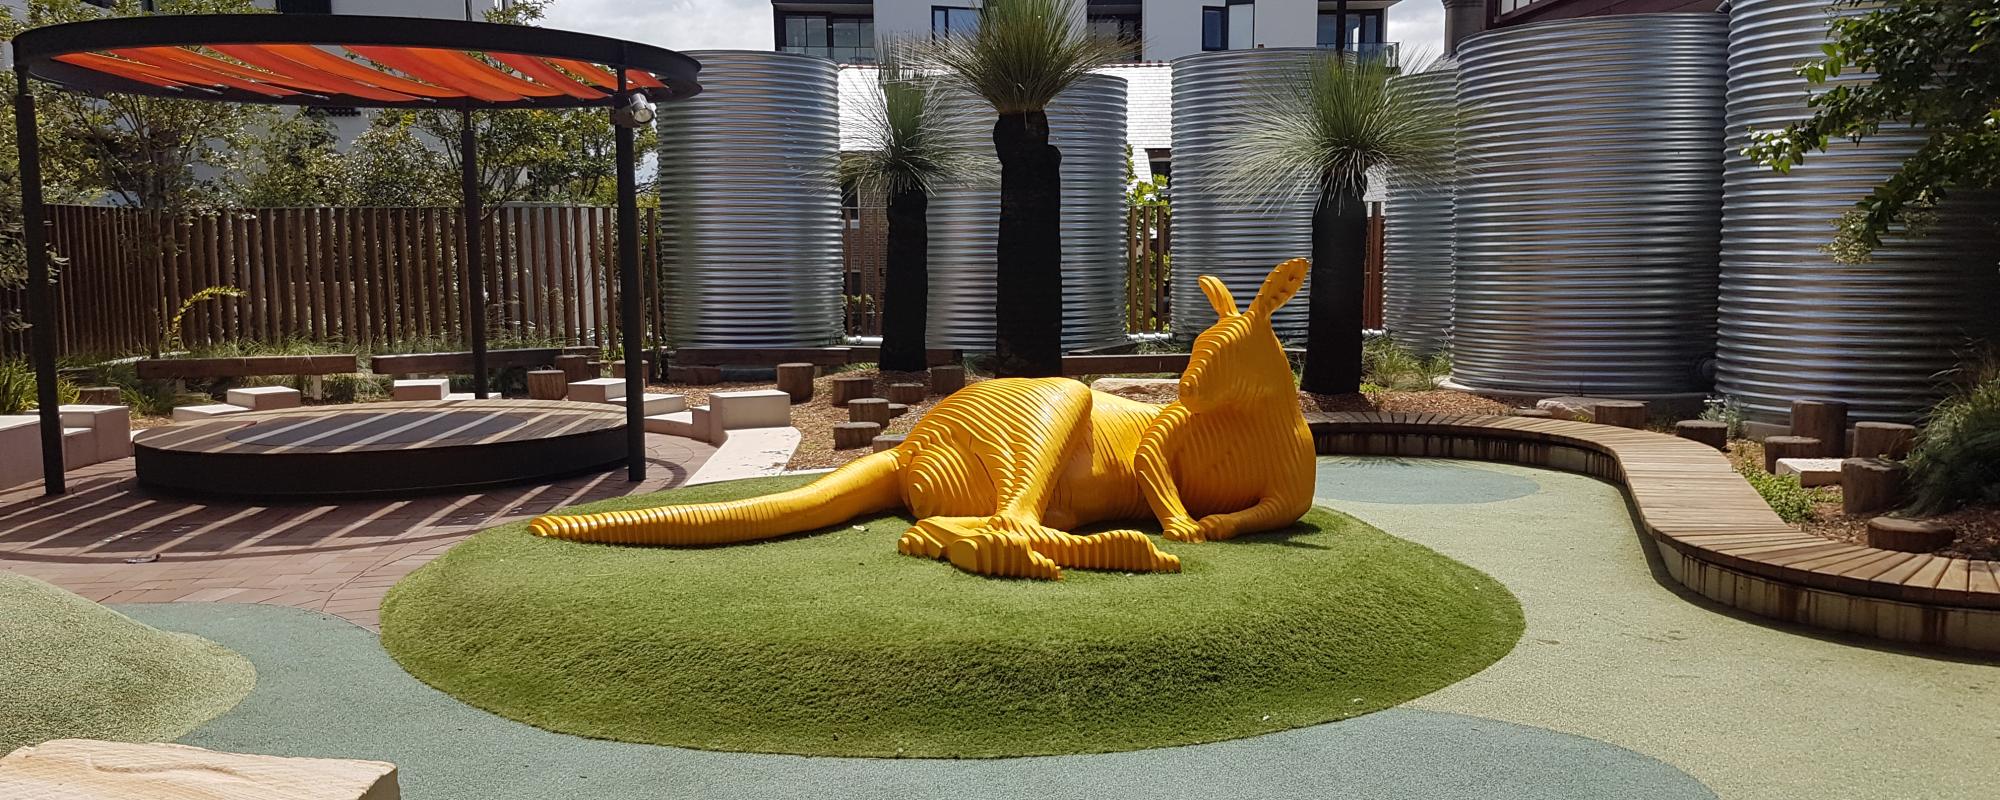 Large yellow sculpture of kangaroo outdoors